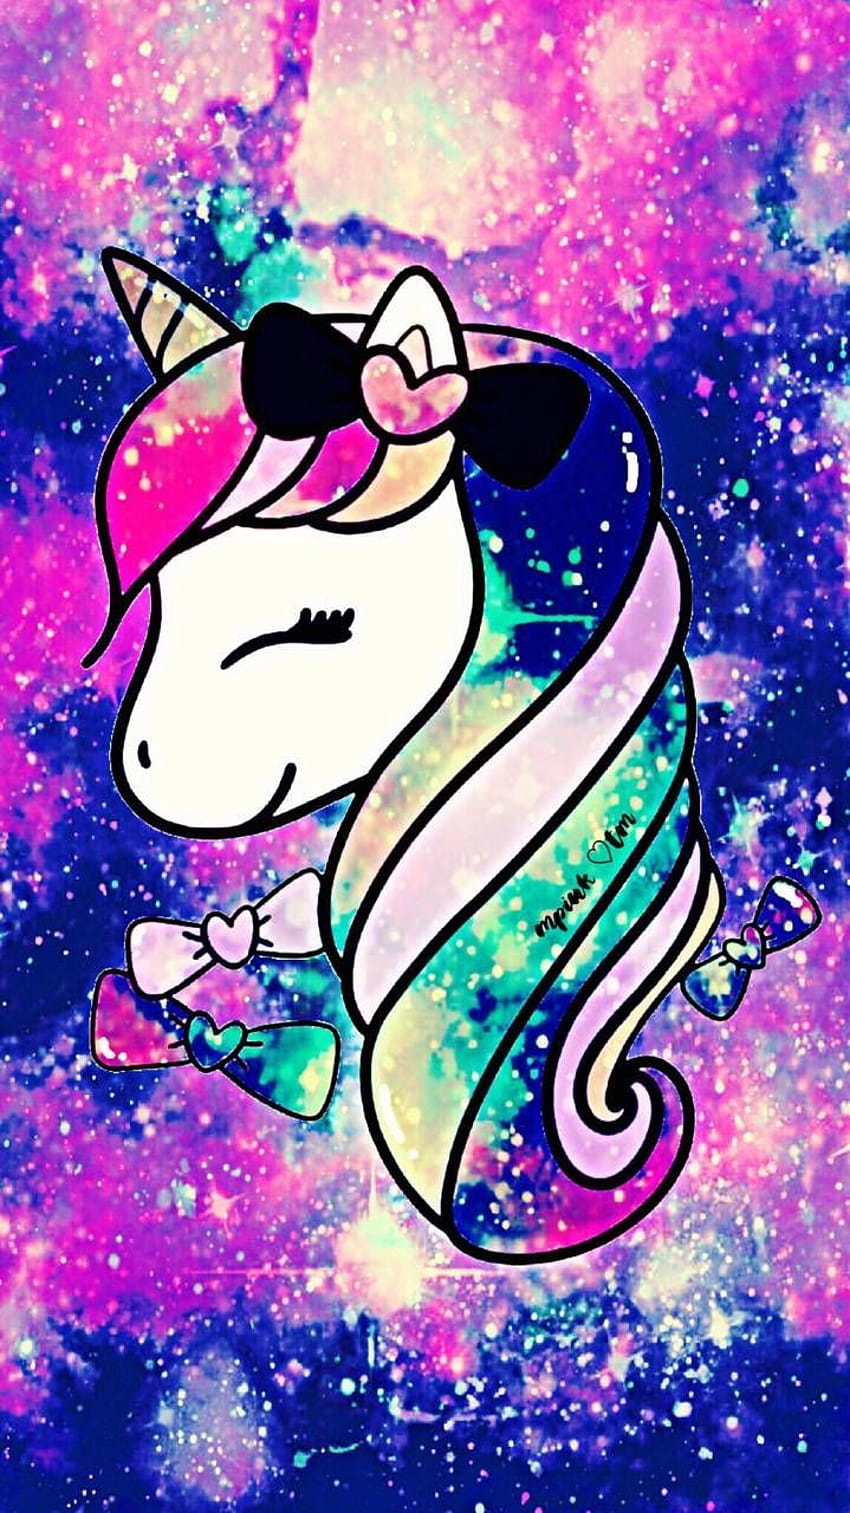 Unicorn Cutie Galaxy chắc chắn sẽ đem lại sự yêu thích cho bạn! Với những hình ảnh Kawaii Unicorn đầy màu sắc và ngộ nghĩnh, chúng sẽ giúp bạn thư giãn và cảm thấy vui vẻ.